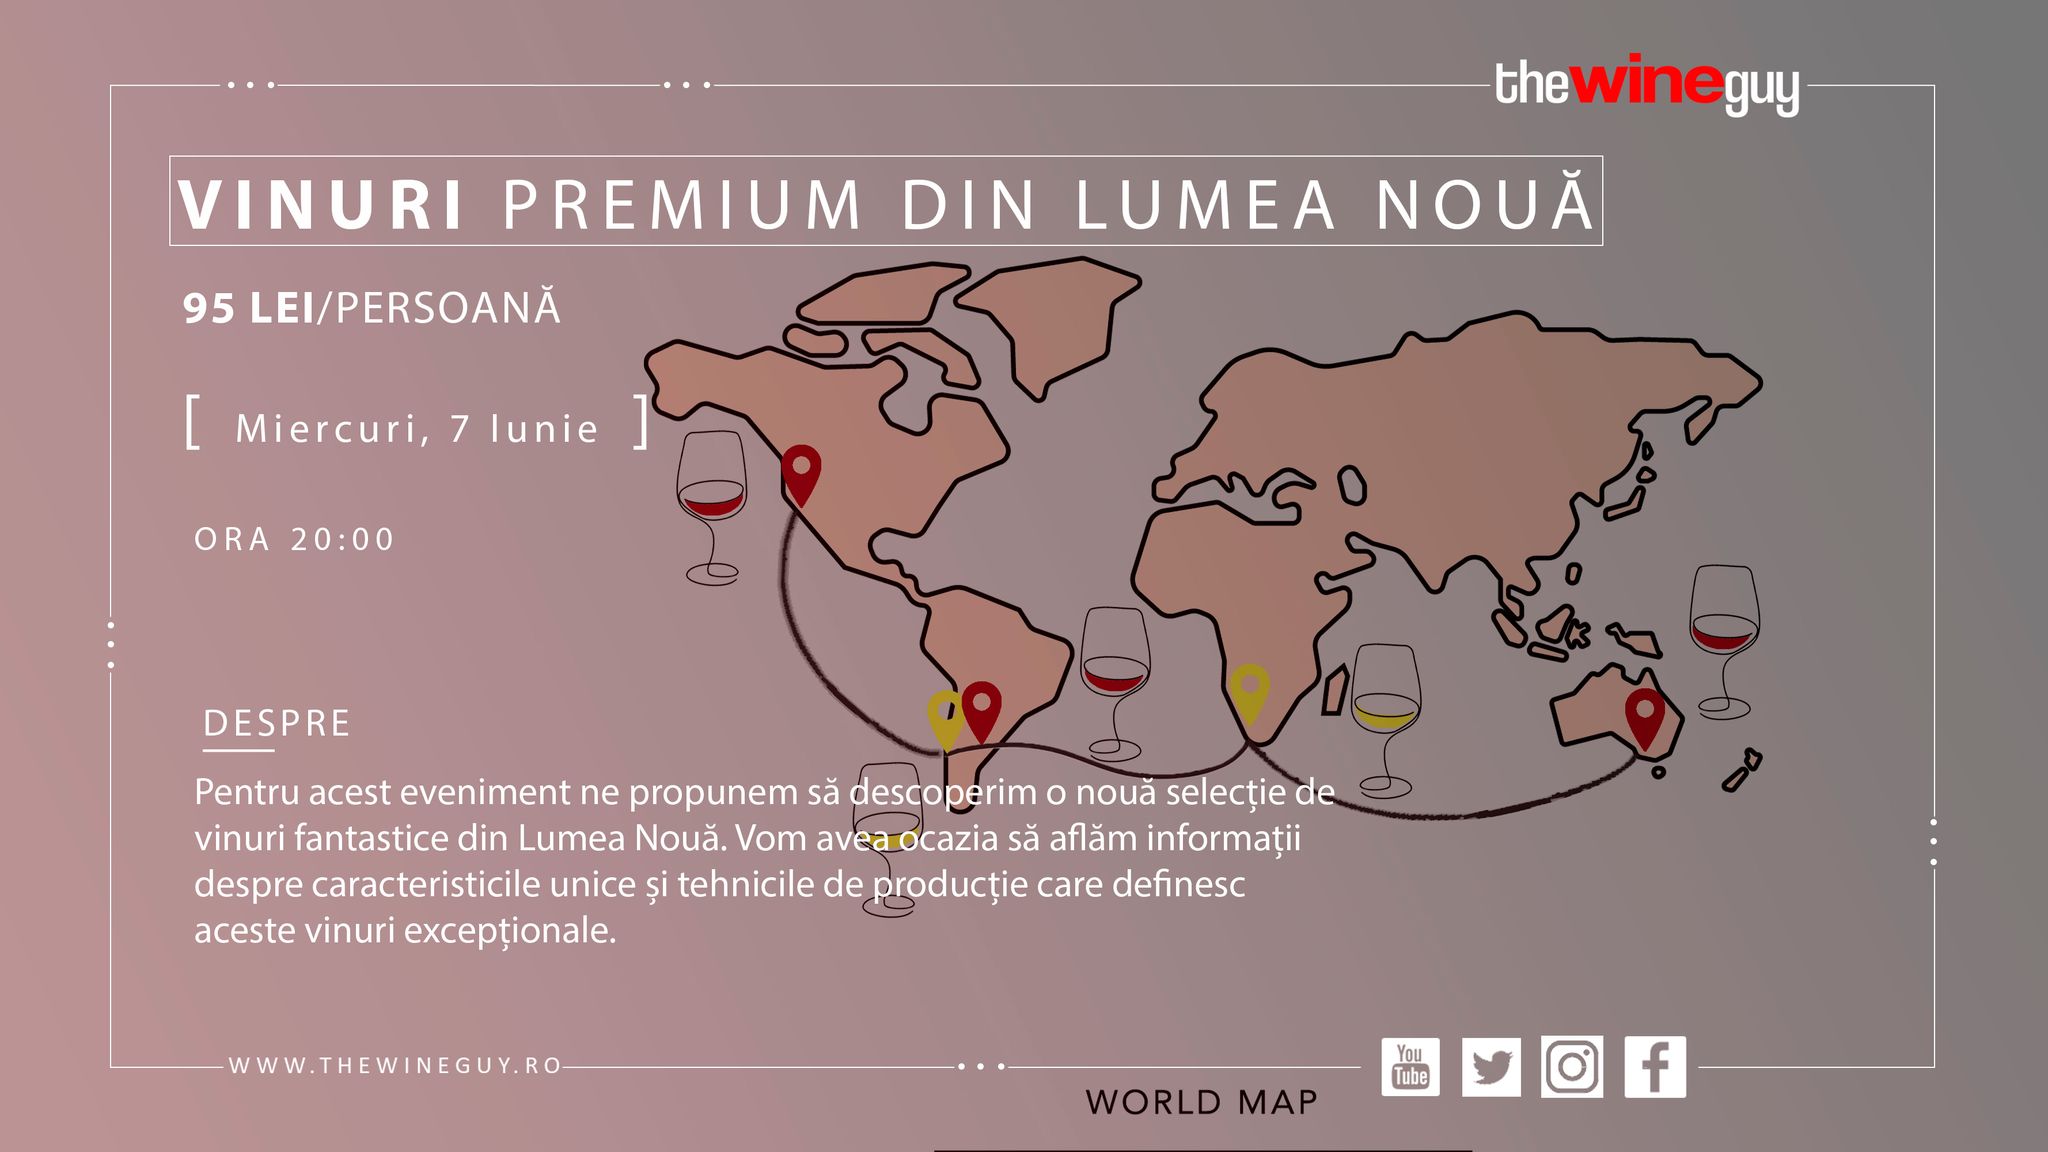 Vinuri Premium din Lumea Noua (Timisoara)